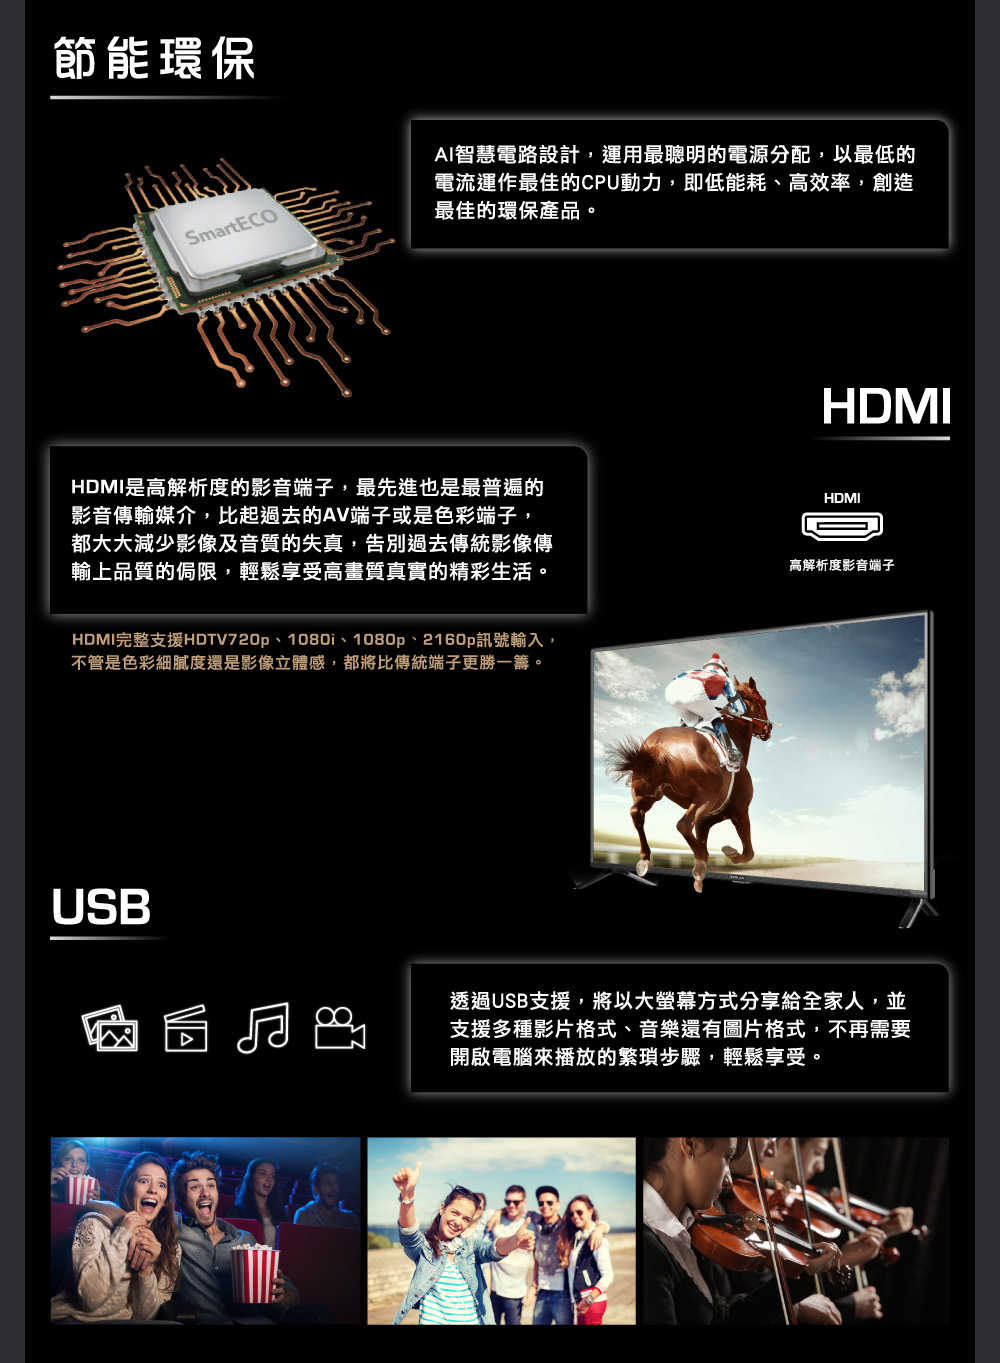 【HERAN 禾聯】55 吋 4K數位液晶顯示器 螢幕 杜比音效 無邊框設計 HD-55MG1